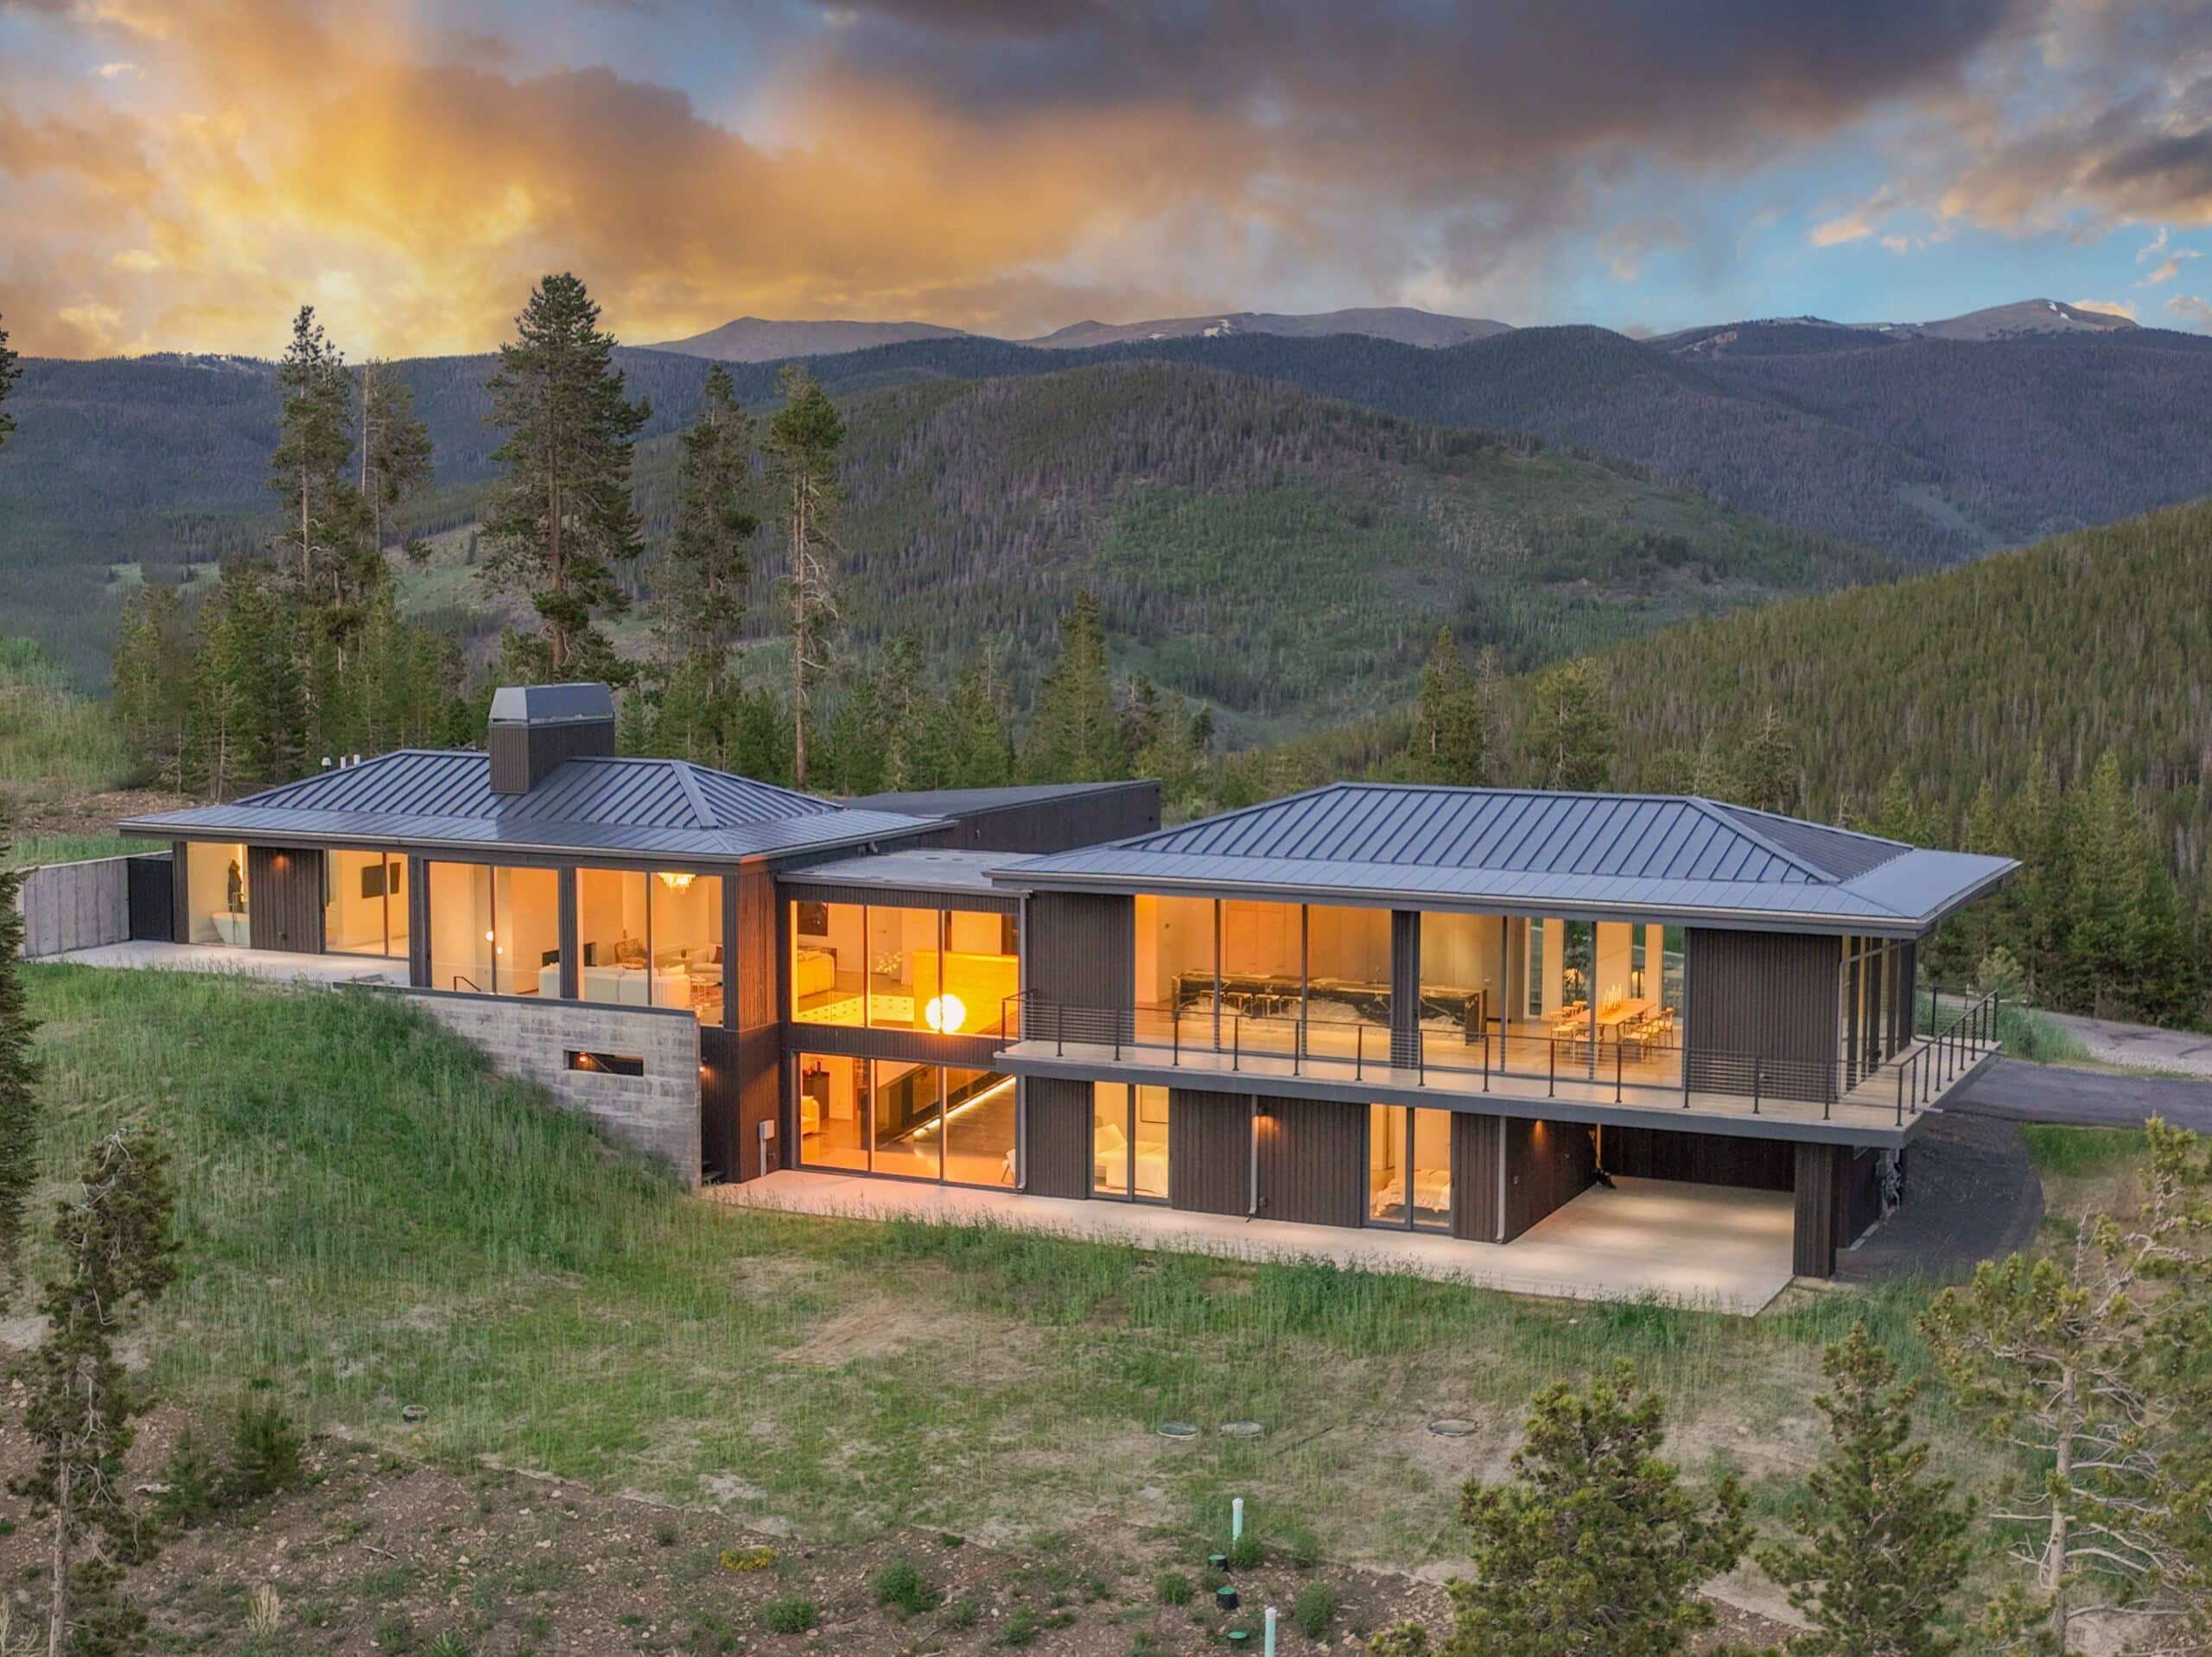 Colorado Mountain Home Reveals Spectacular European Contemporary Design